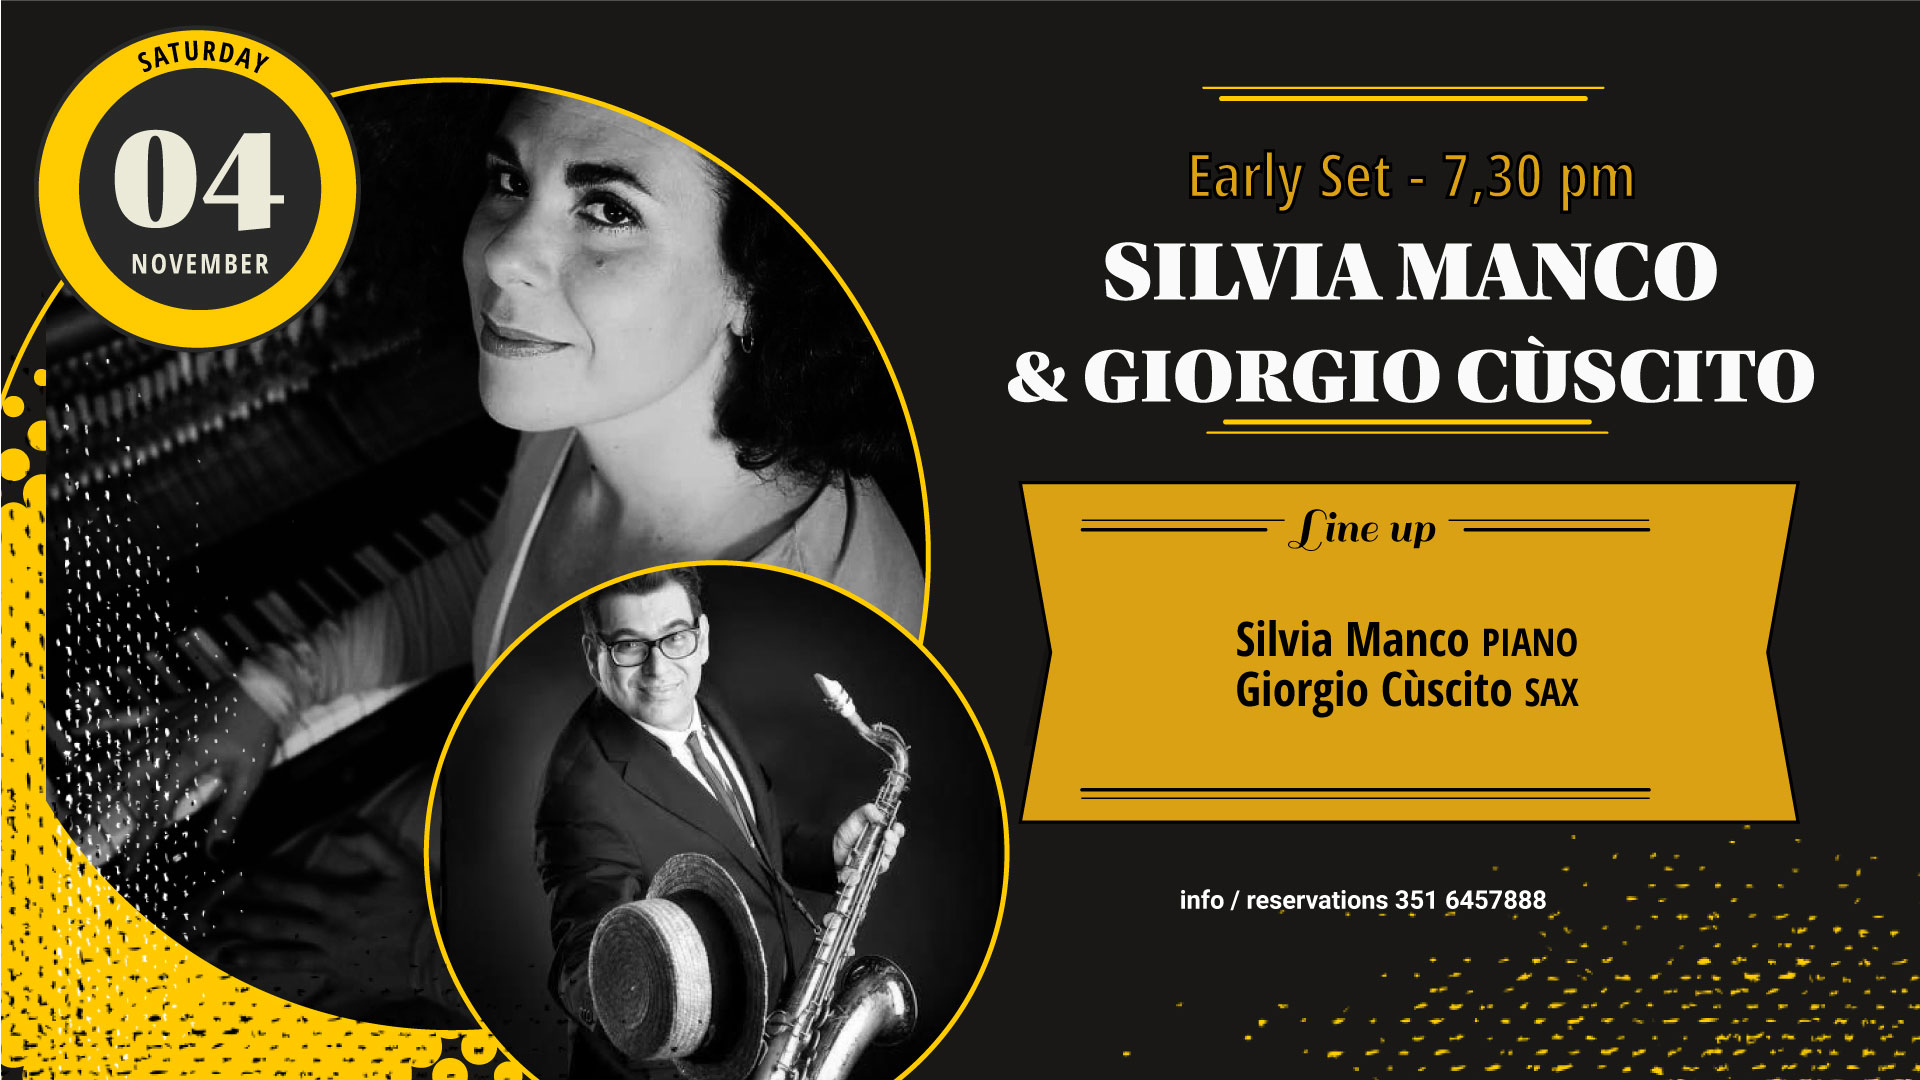 Early Set: Silvia Manco & Giorgio Cuscito